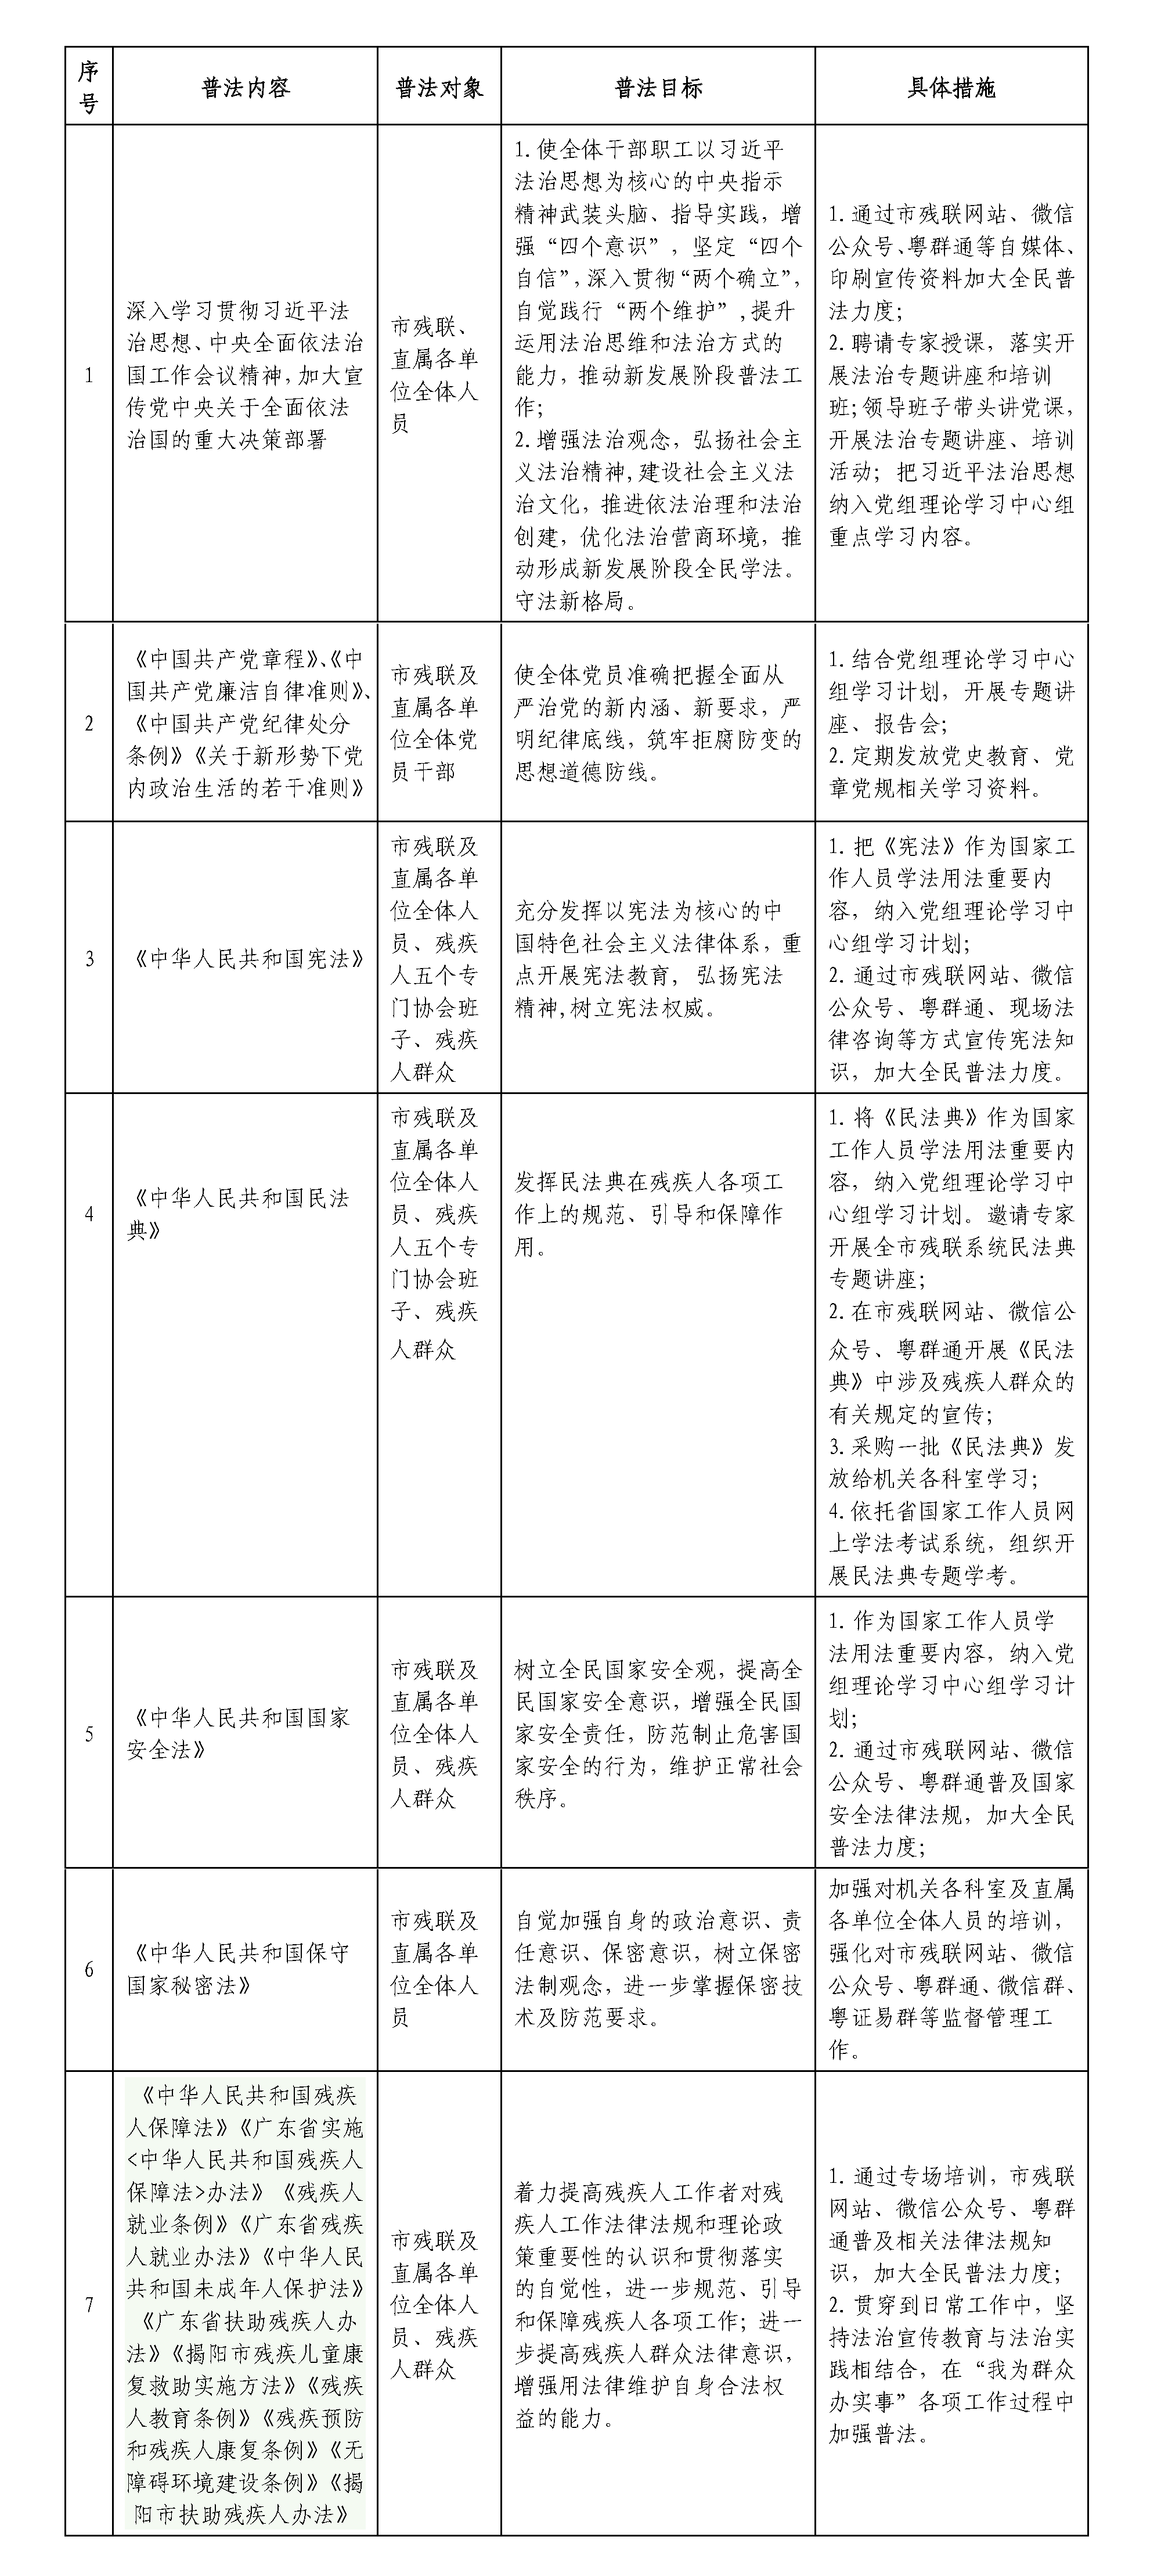 揭阳市残疾人联合会普法责任清单_页面_1.png